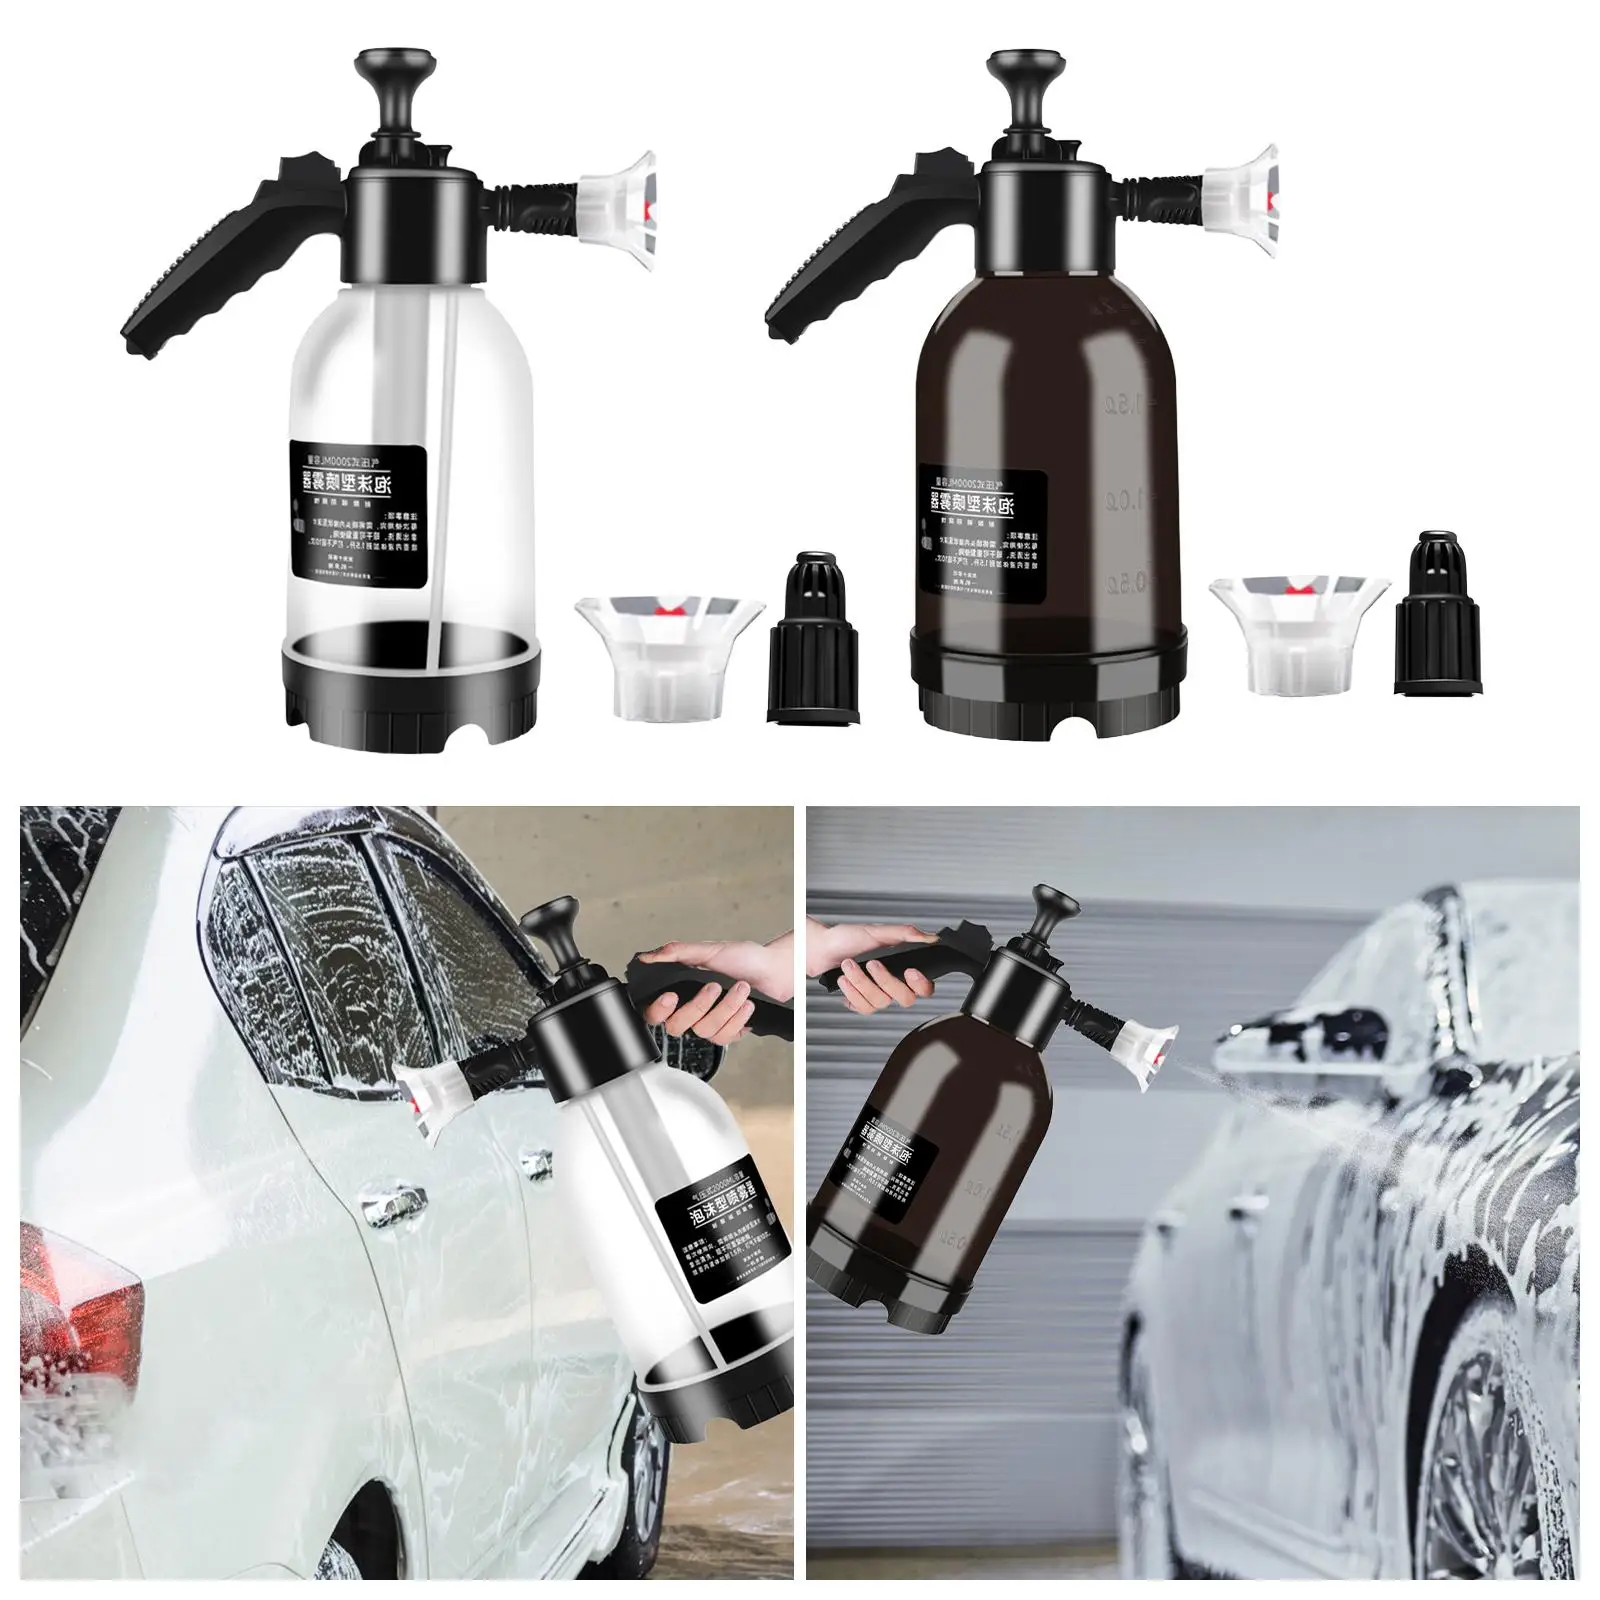 Car Wash Foam Sprayer Water Sprayer 2L Handheld Pressurized Sprayer,Pressure Pump Sprayer,Empty Spraying Bottle for Home